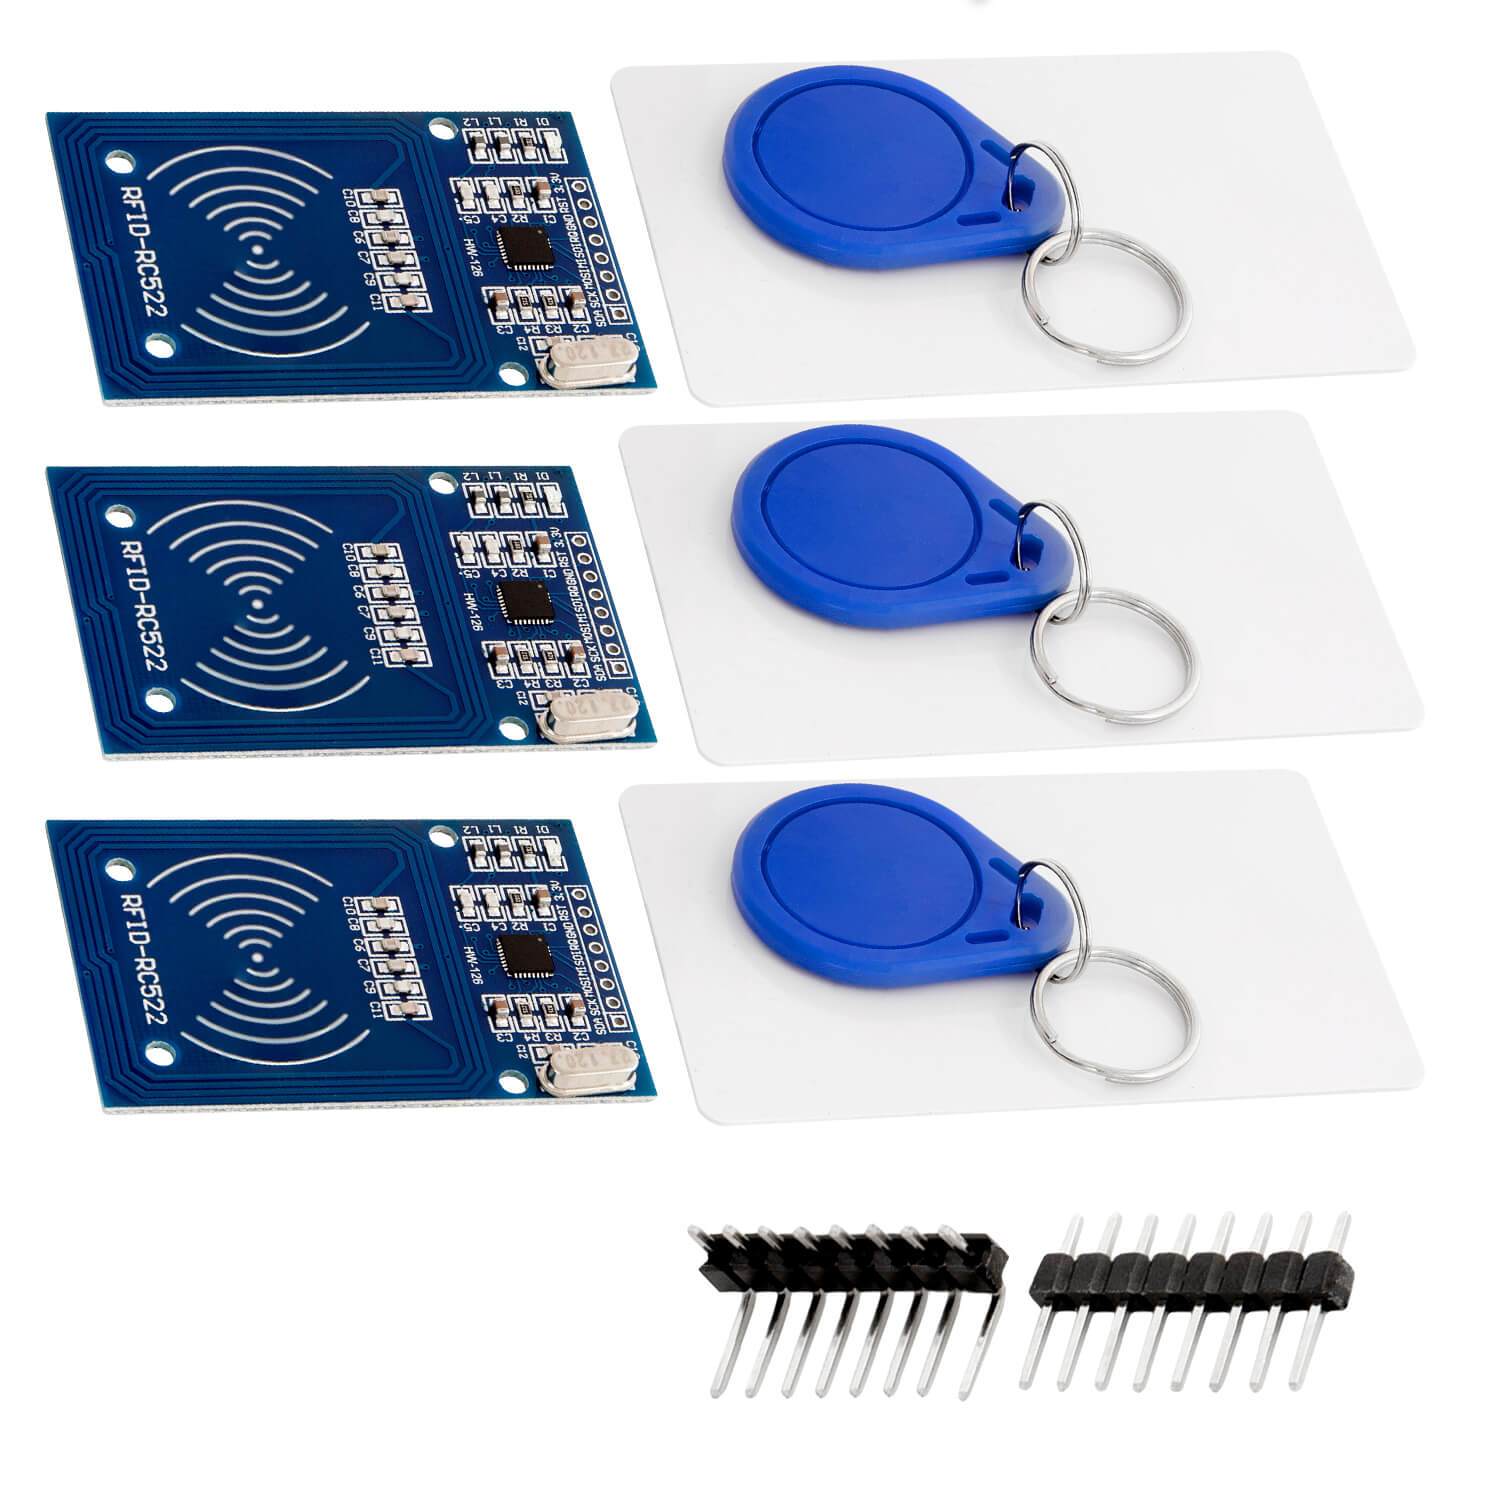 RFID Kit RC522 mit Reader, Chip und Card für Raspberry Pi und Co. (13,56MHz) - AZ-Delivery